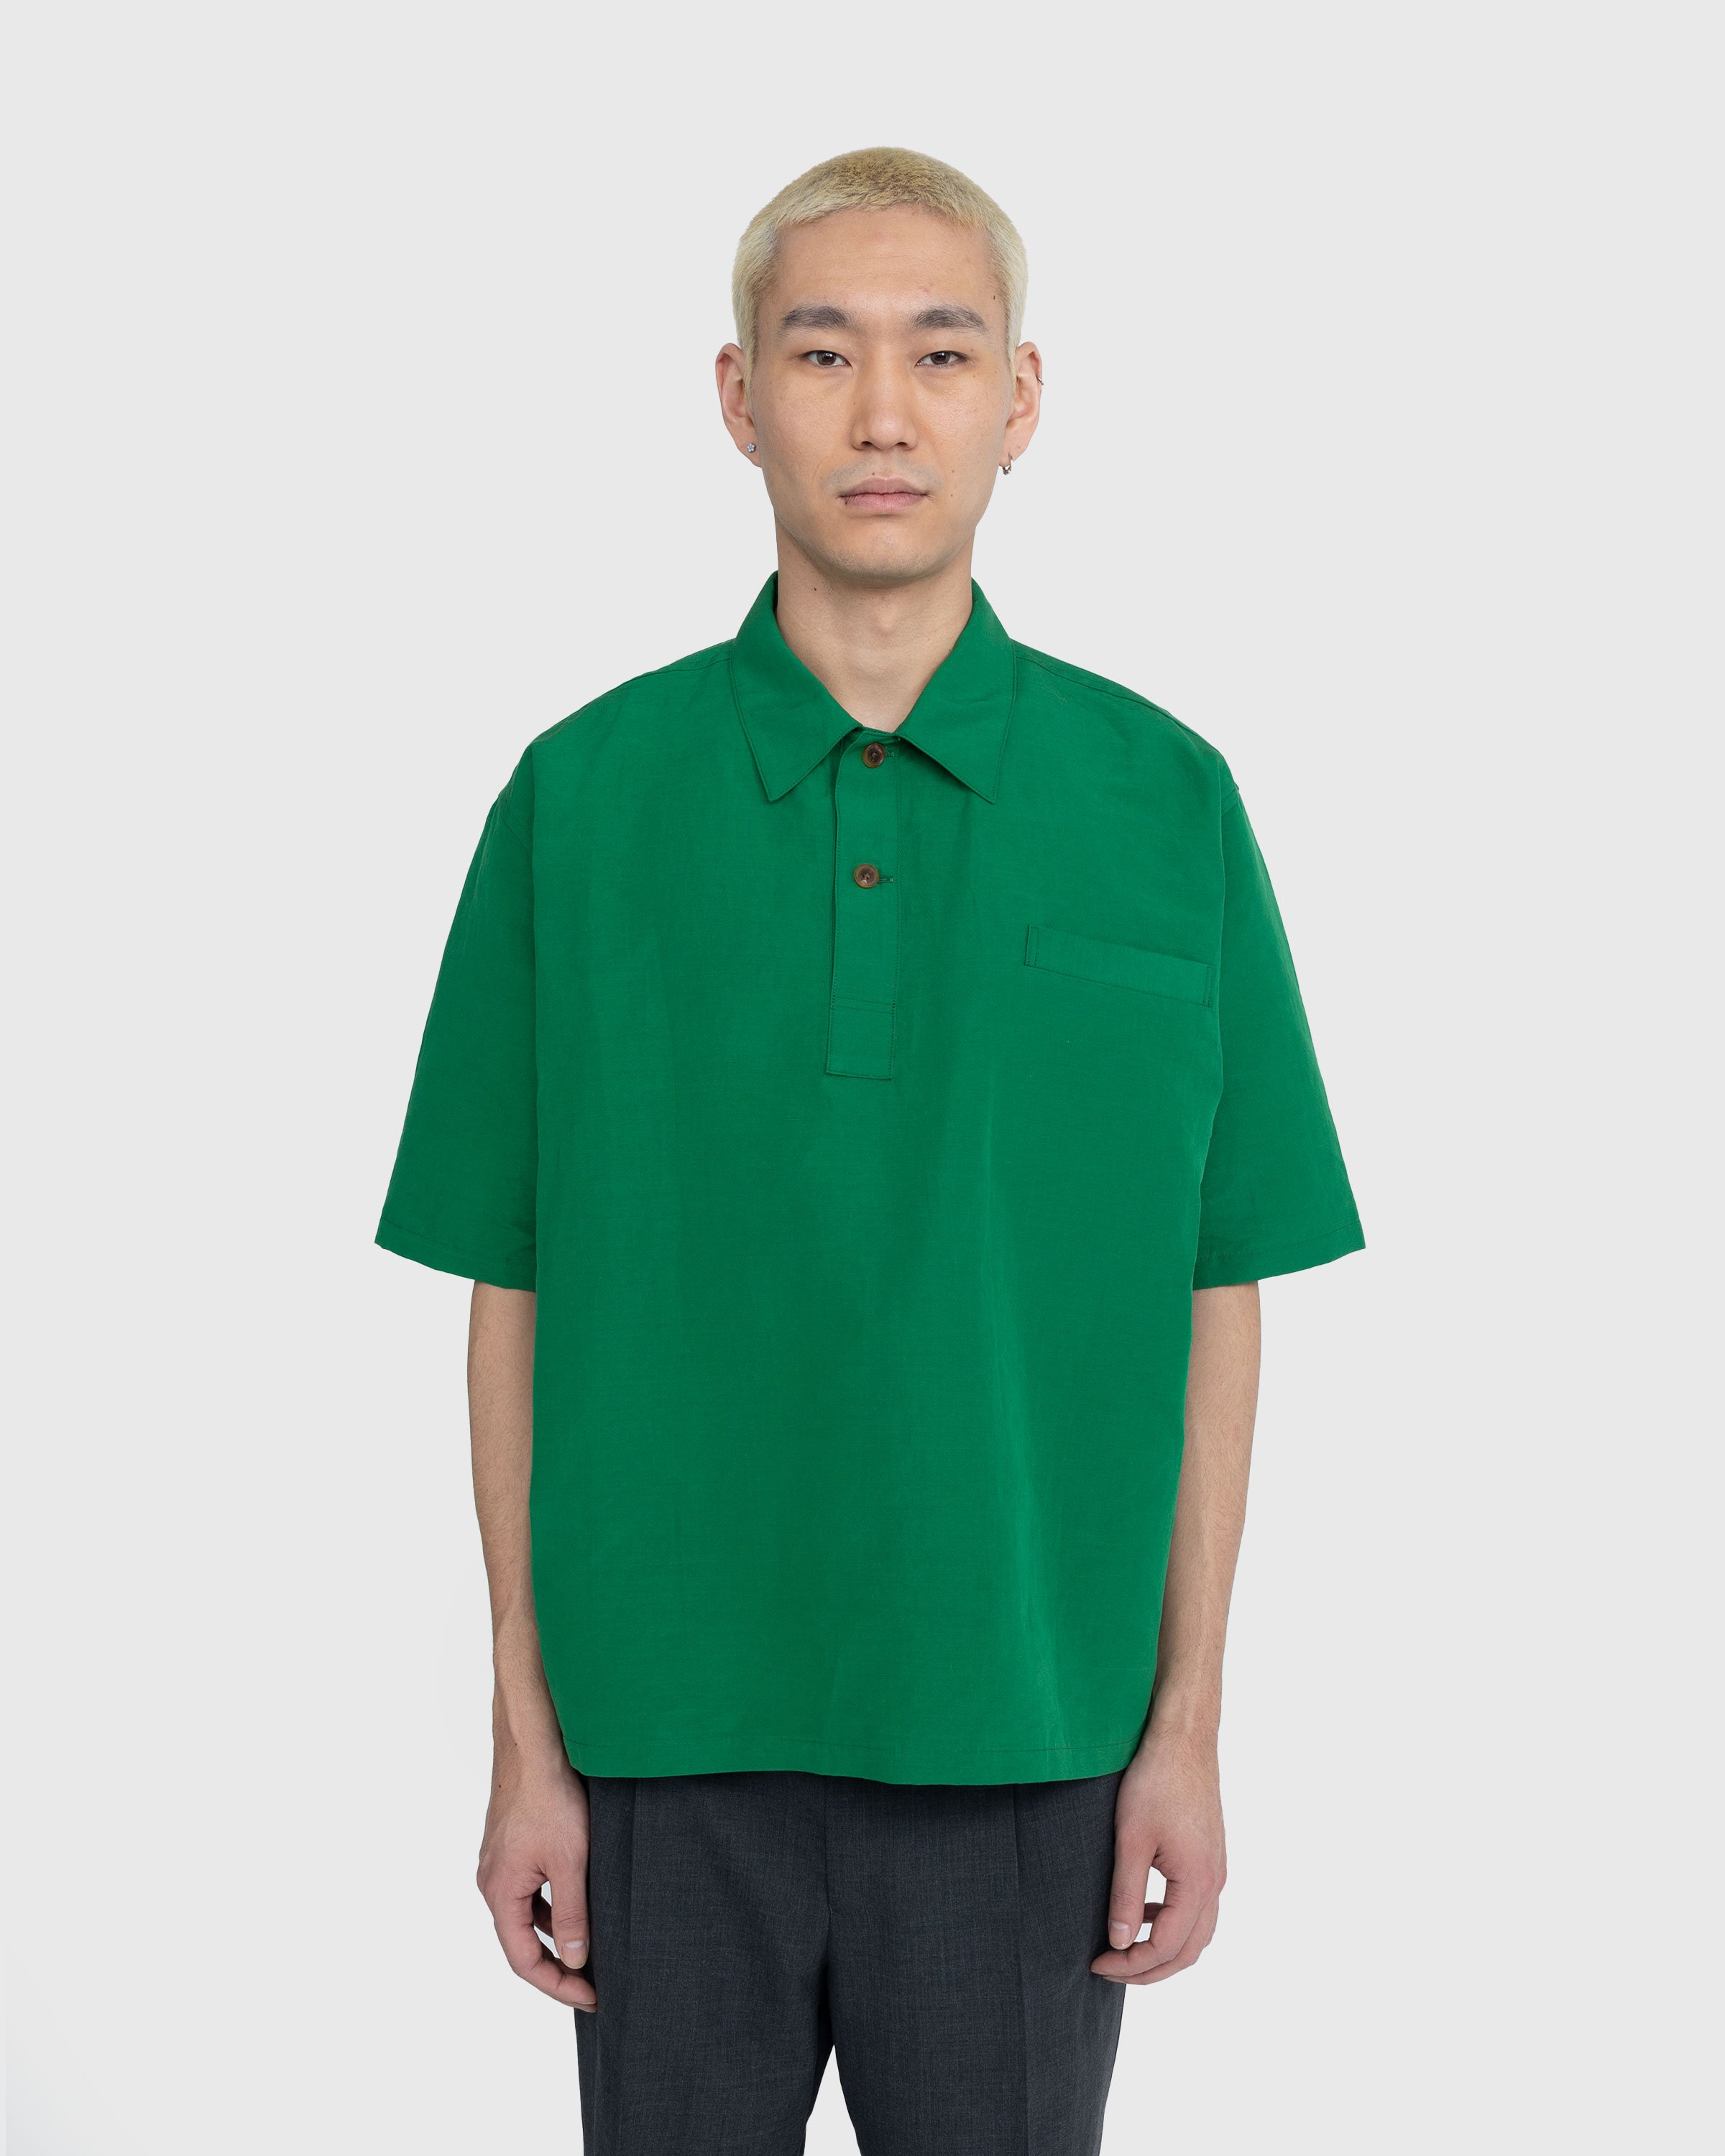 Auralee – High Density Finx Linen Weather Shirt Green | Highsnobiety Shop